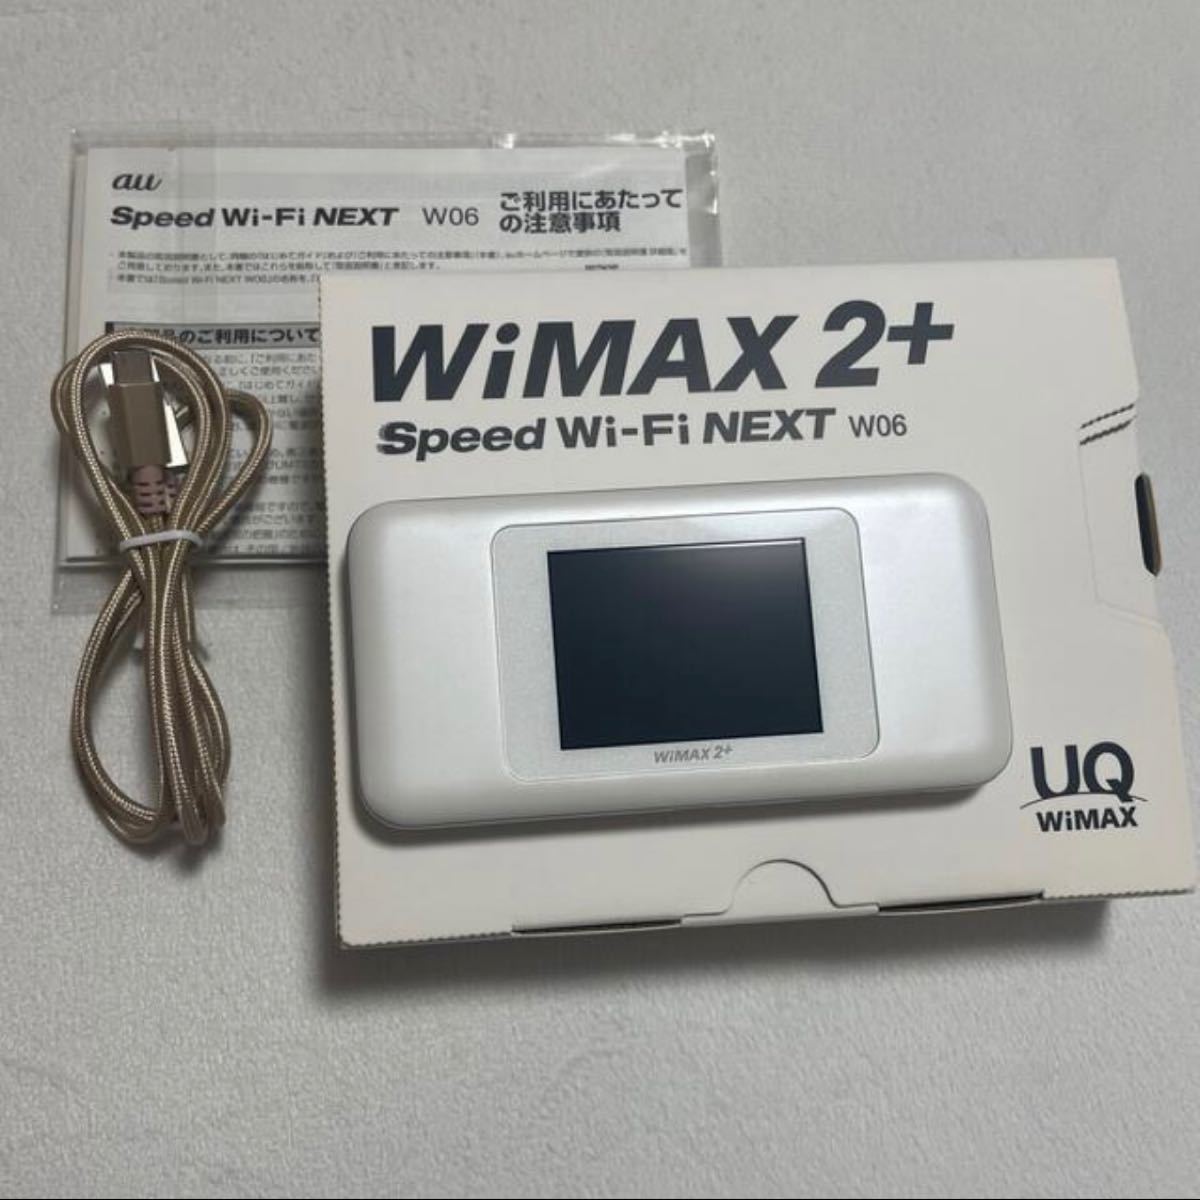 Speed Wi-Fi NEXT W06_auUQ Wimax